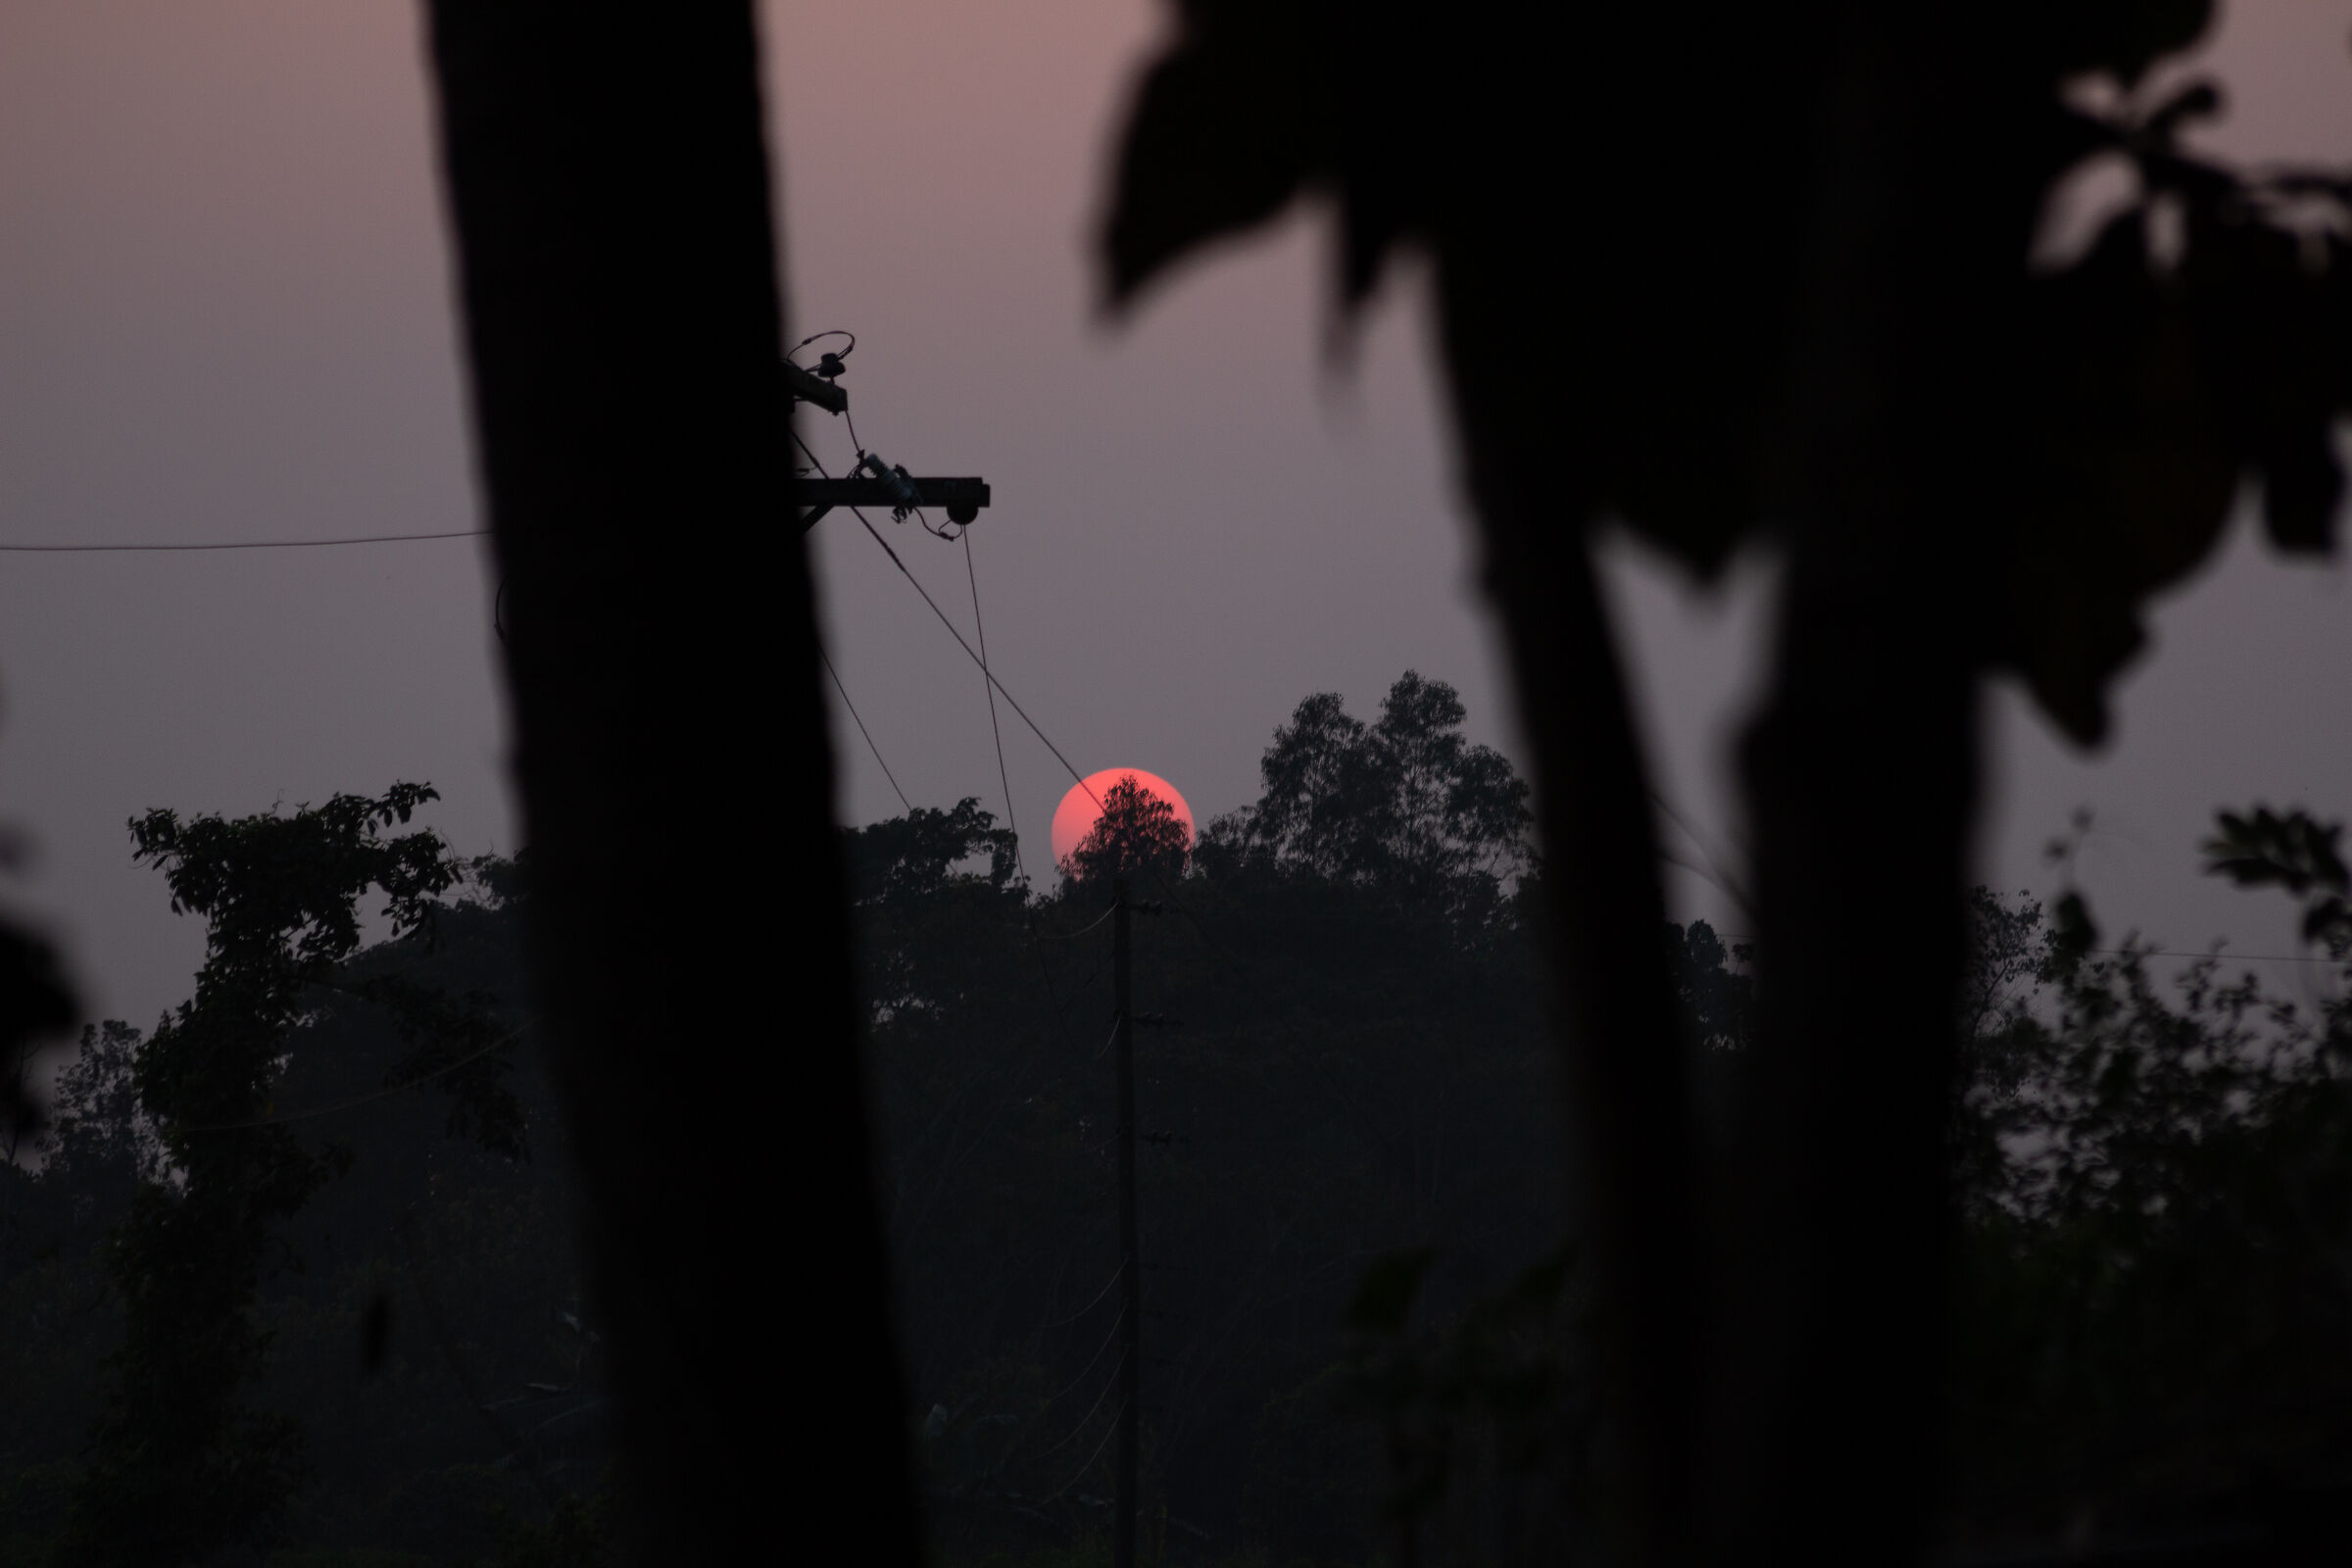 Sunset in Bangladesh...